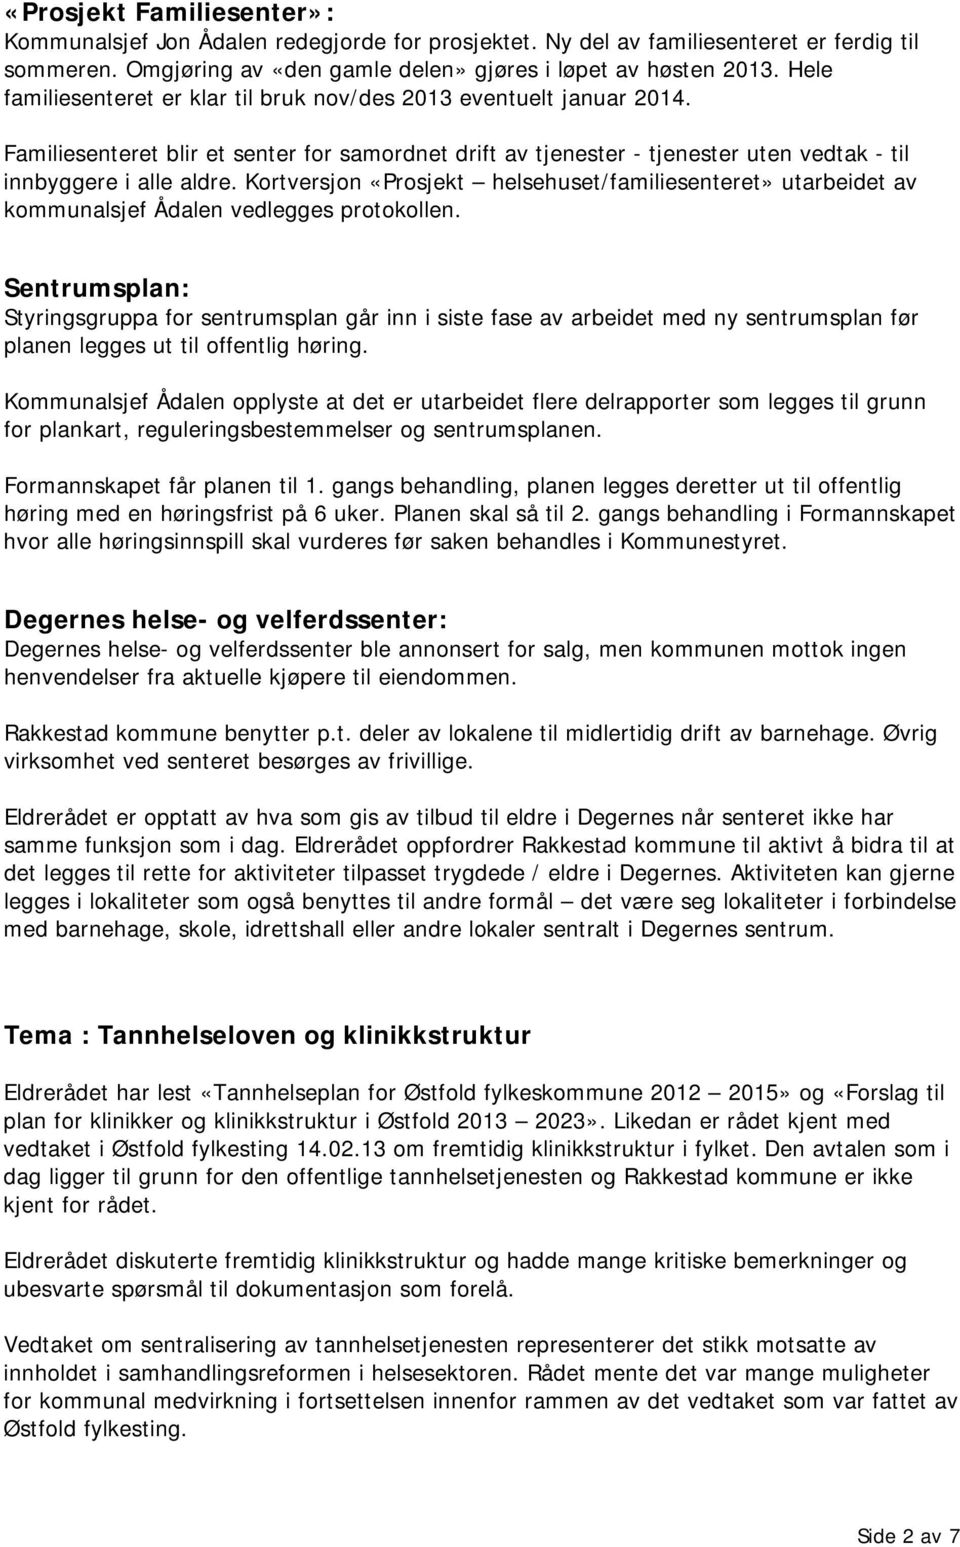 Kortversjon «Prosjekt helsehuset/familiesenteret» utarbeidet av kommunalsjef Ådalen vedlegges protokollen.